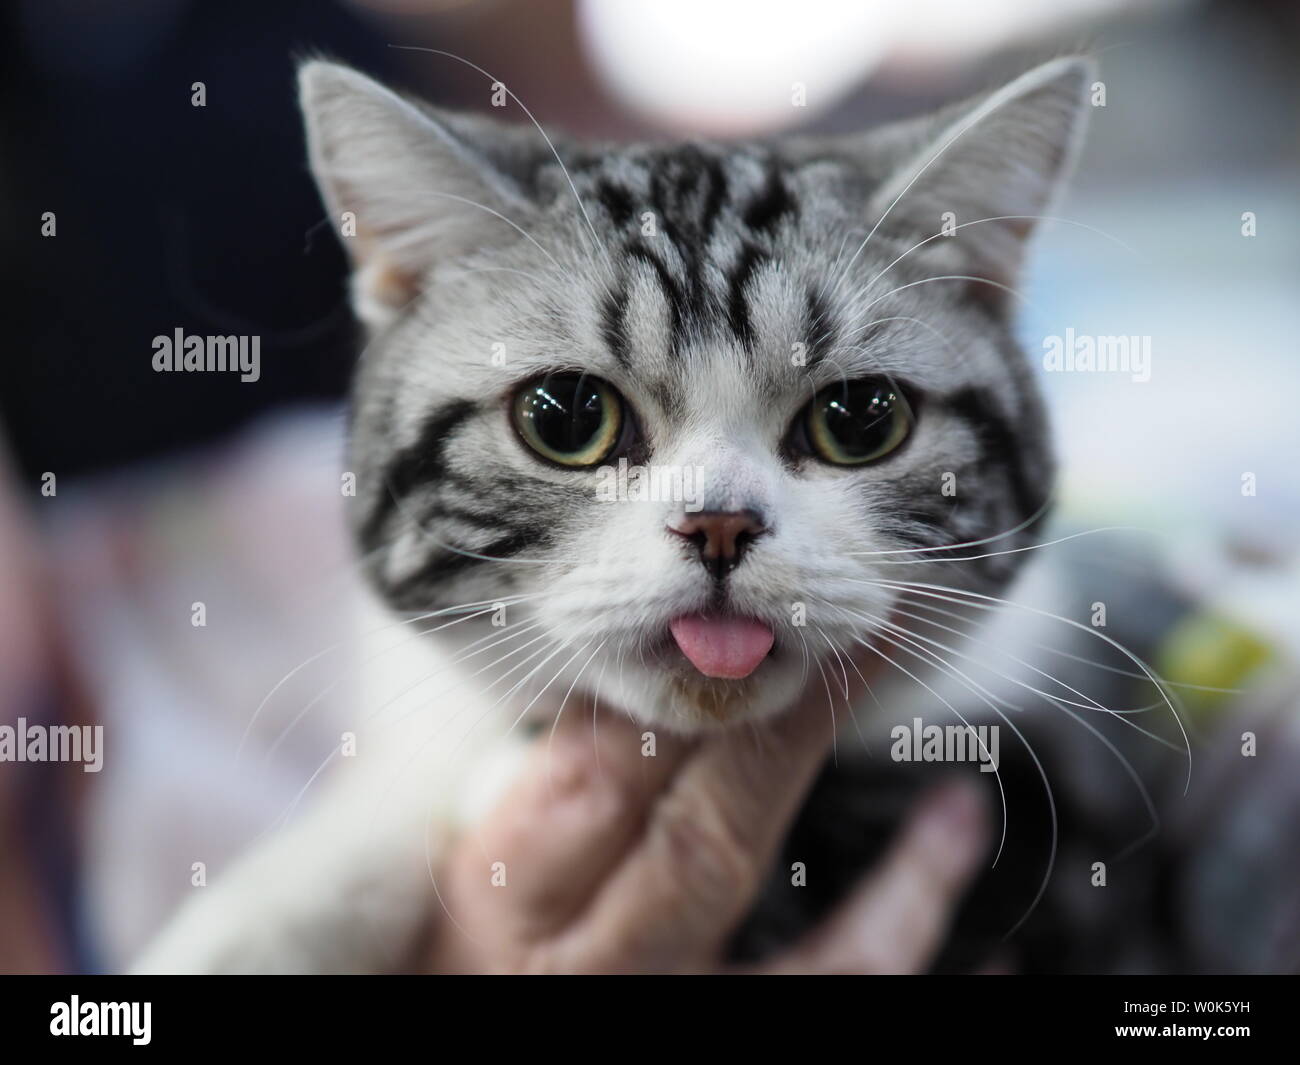 Mayo 2019 - Hermosa Negro, Blanco y Gris American Shorthair Cat mirando directamente a usted Foto de stock